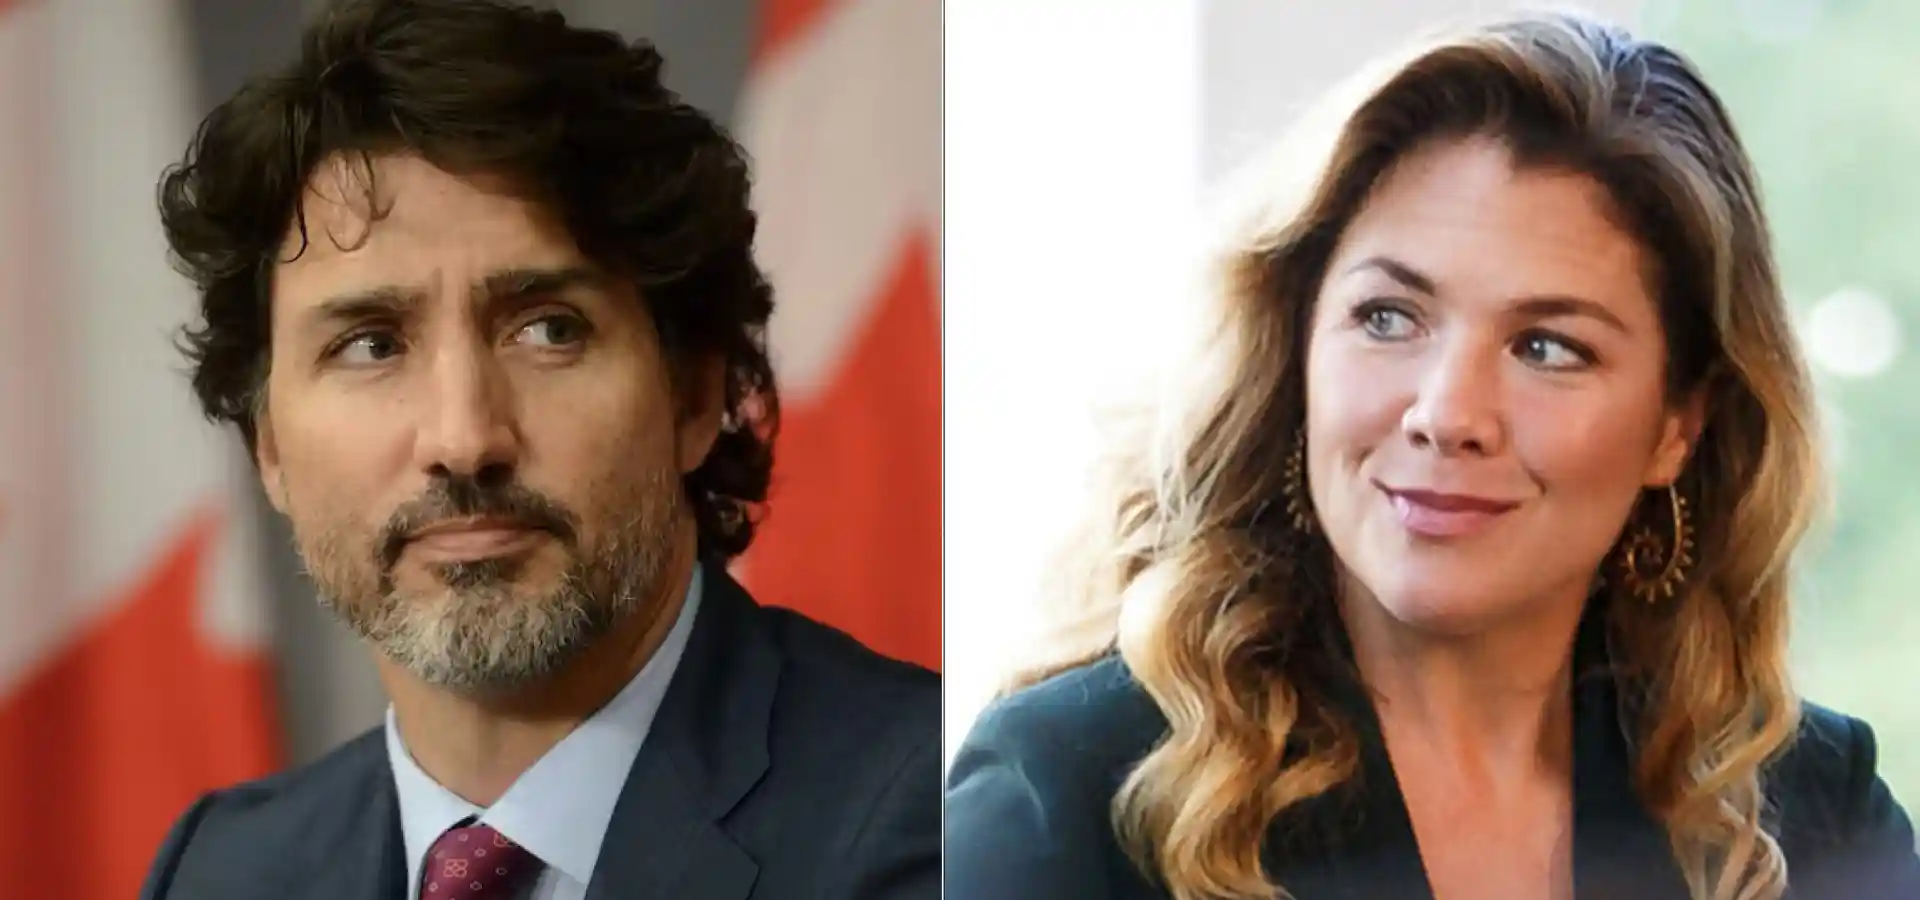 ‎Trudeau and Sophie Gregoire Public Announcement of Separation